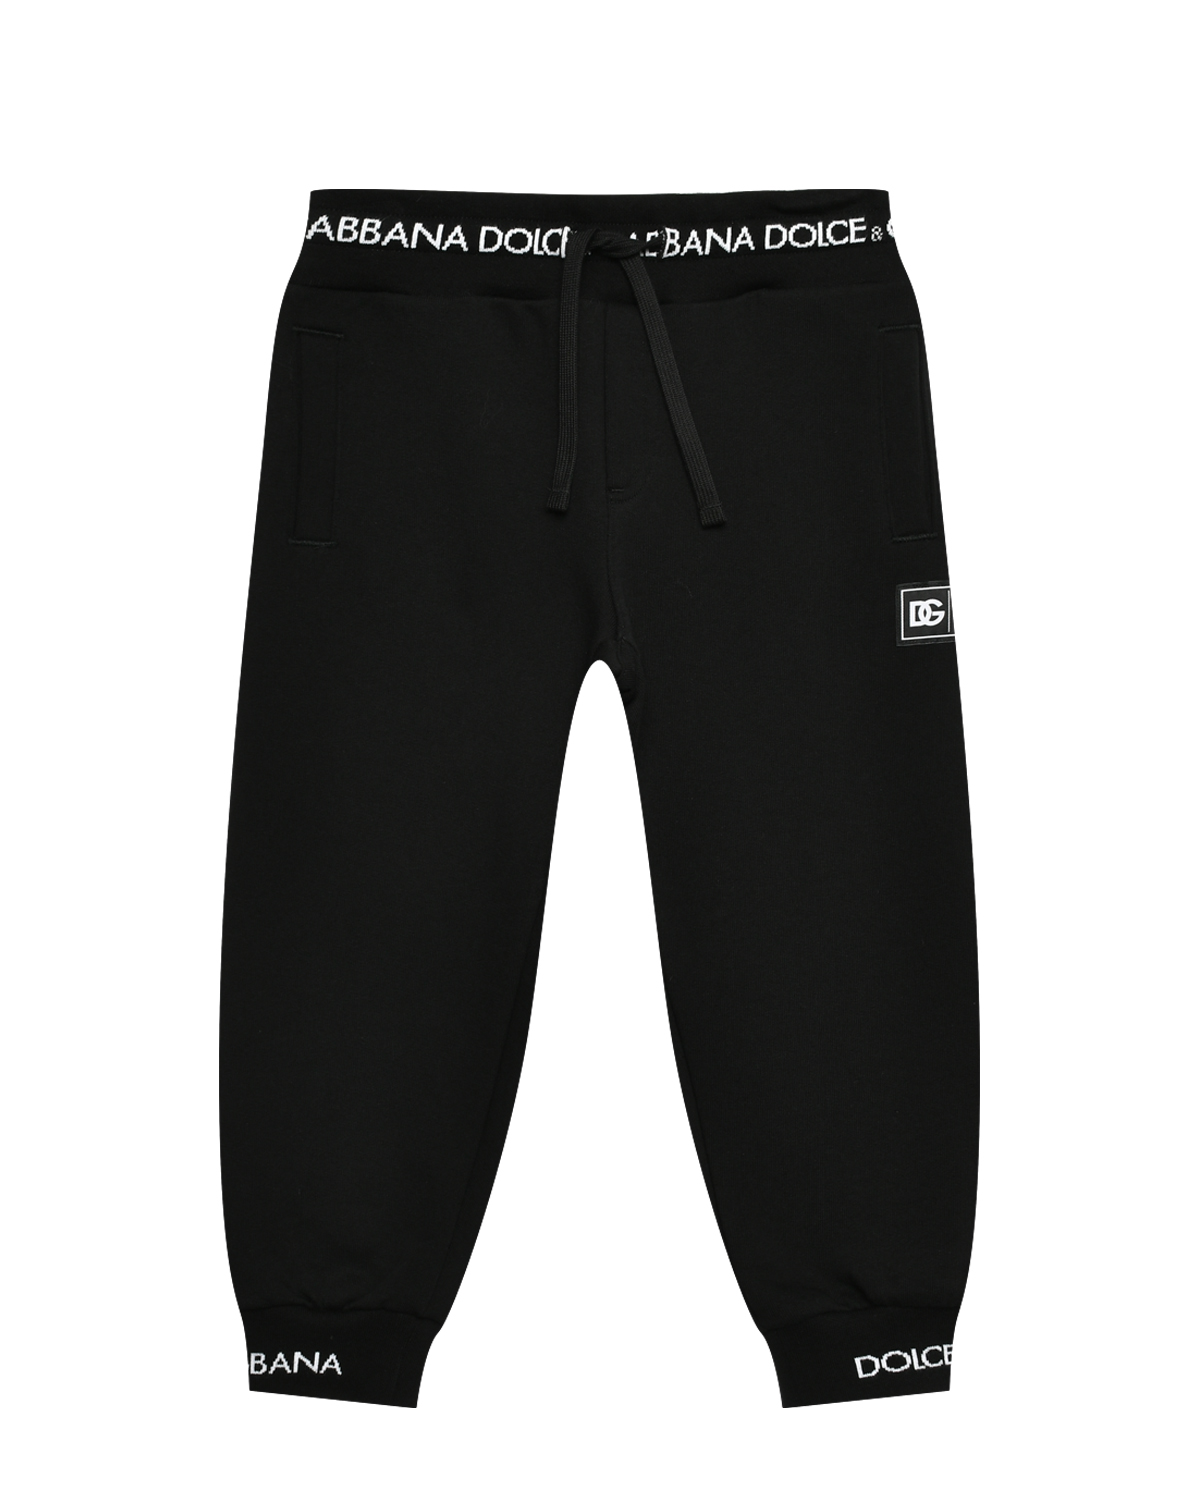 Брюки спортивные с логотипом на поясе и манжетах, черные Dolce&Gabbana, размер 110, цвет черный